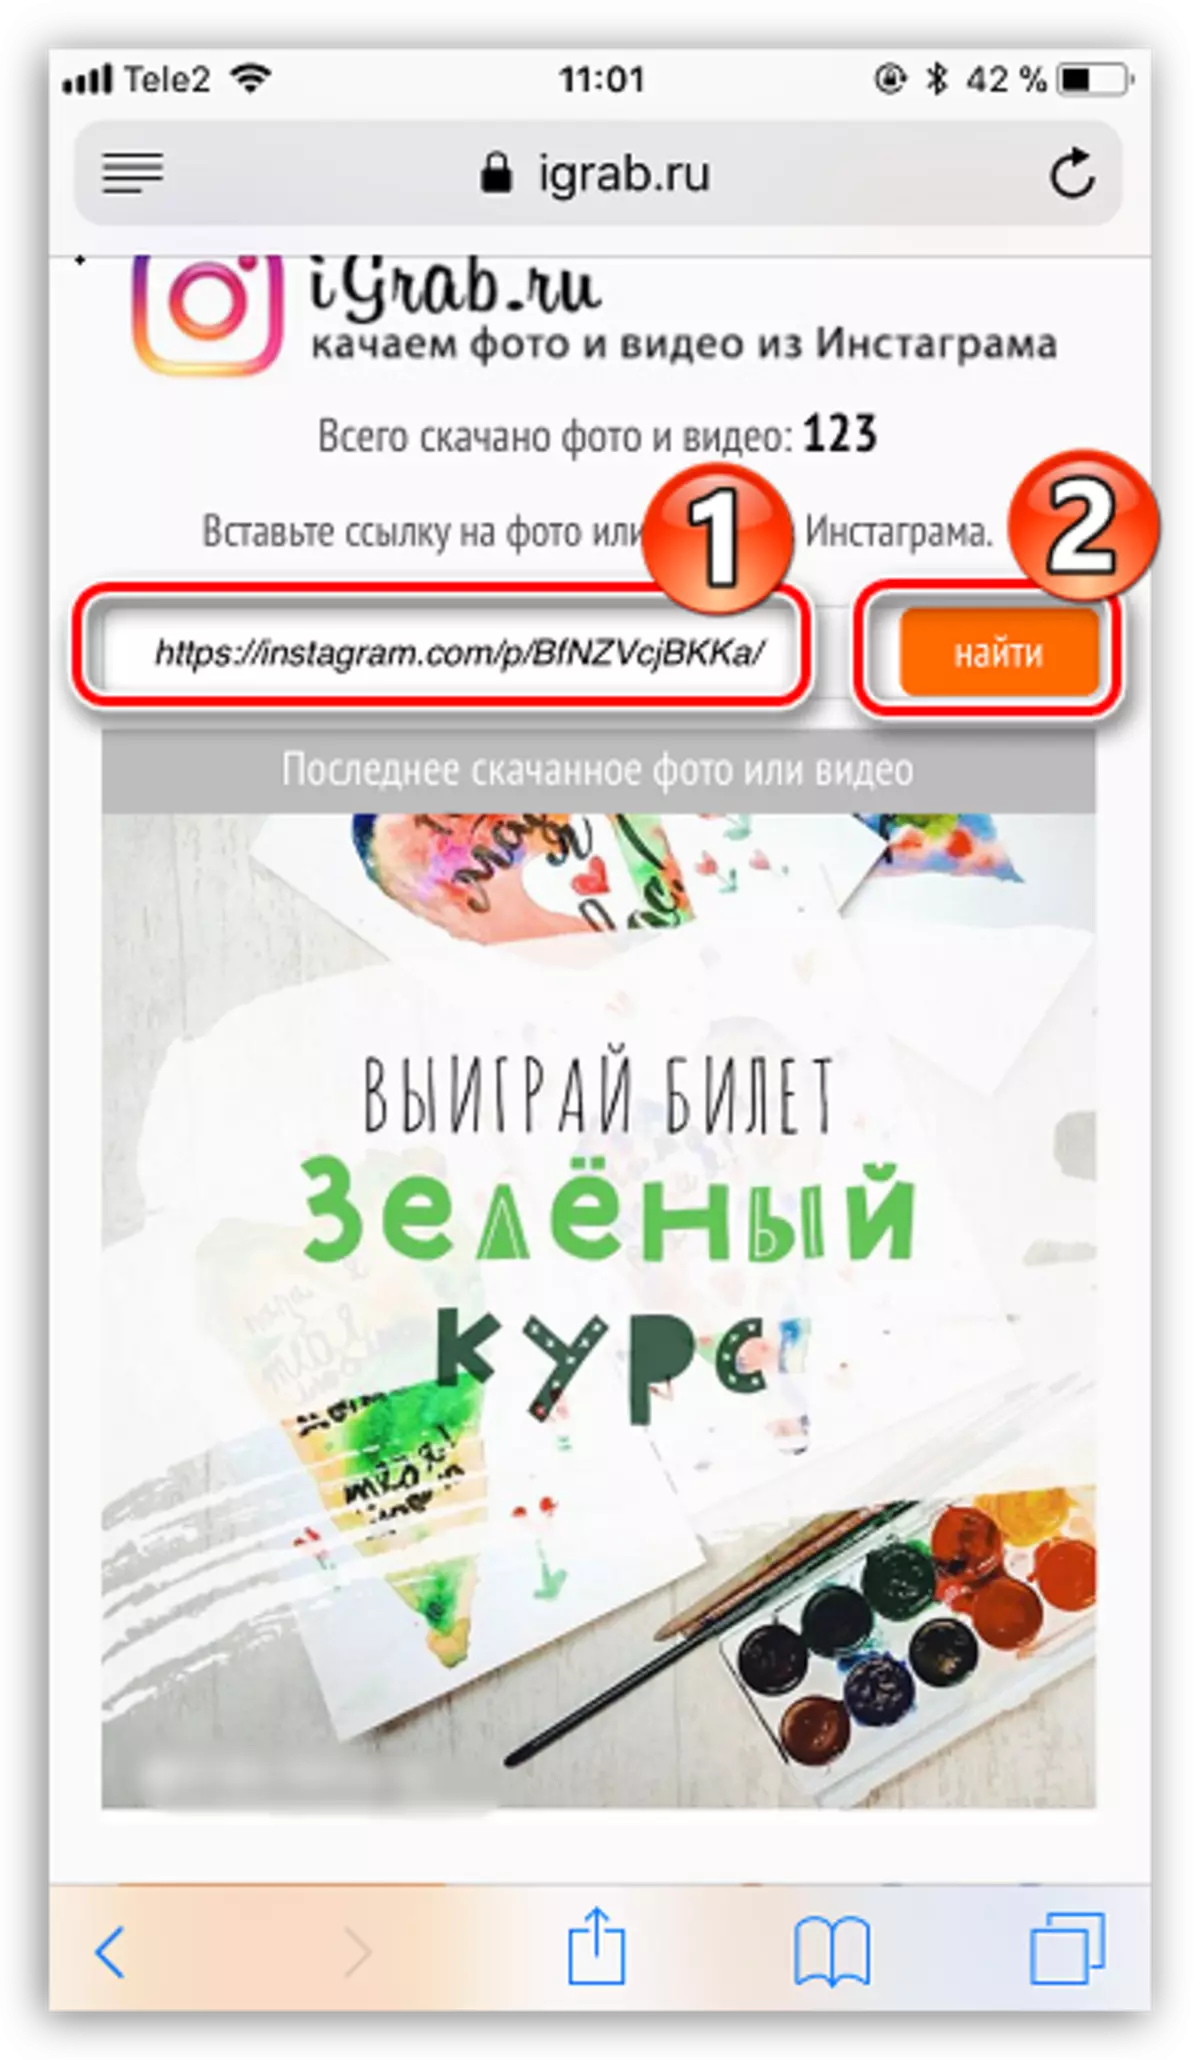 Igrab.ru वेबसाइटवर व्हिडिओ शोधा